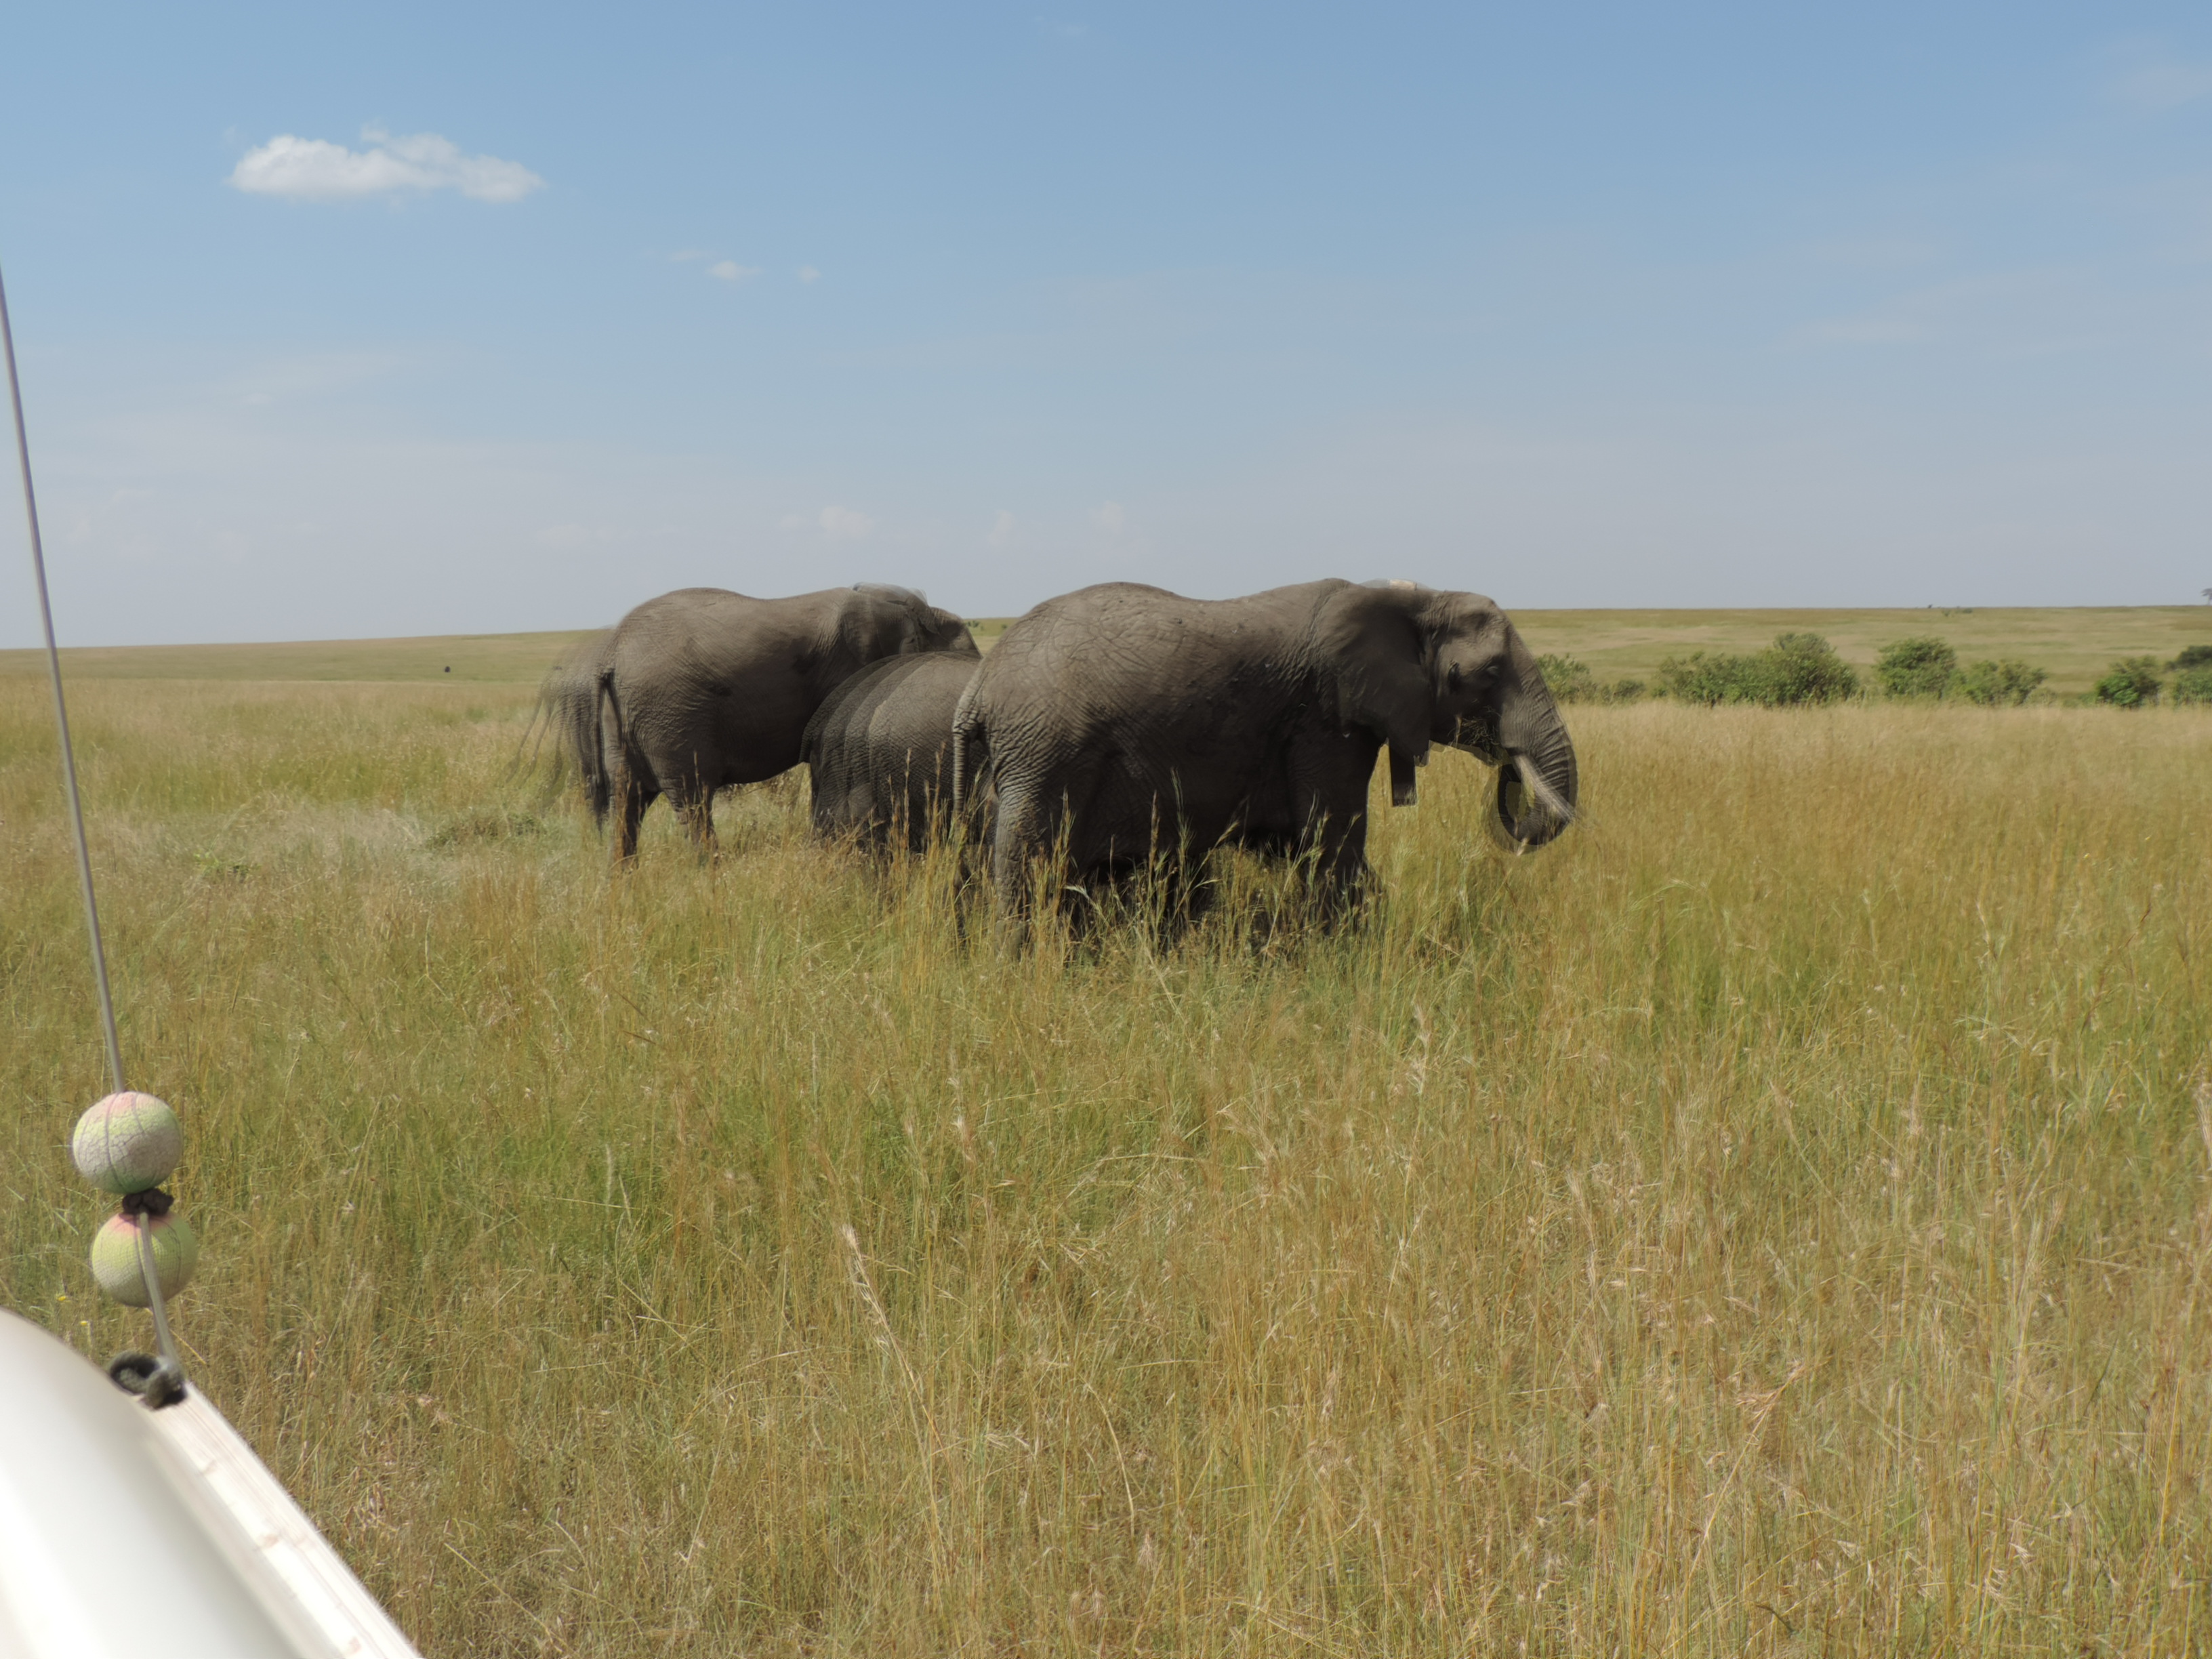 The Big Five, Kenya Adventure Safaris Bookings/ YHA Kenya Travel Tours.